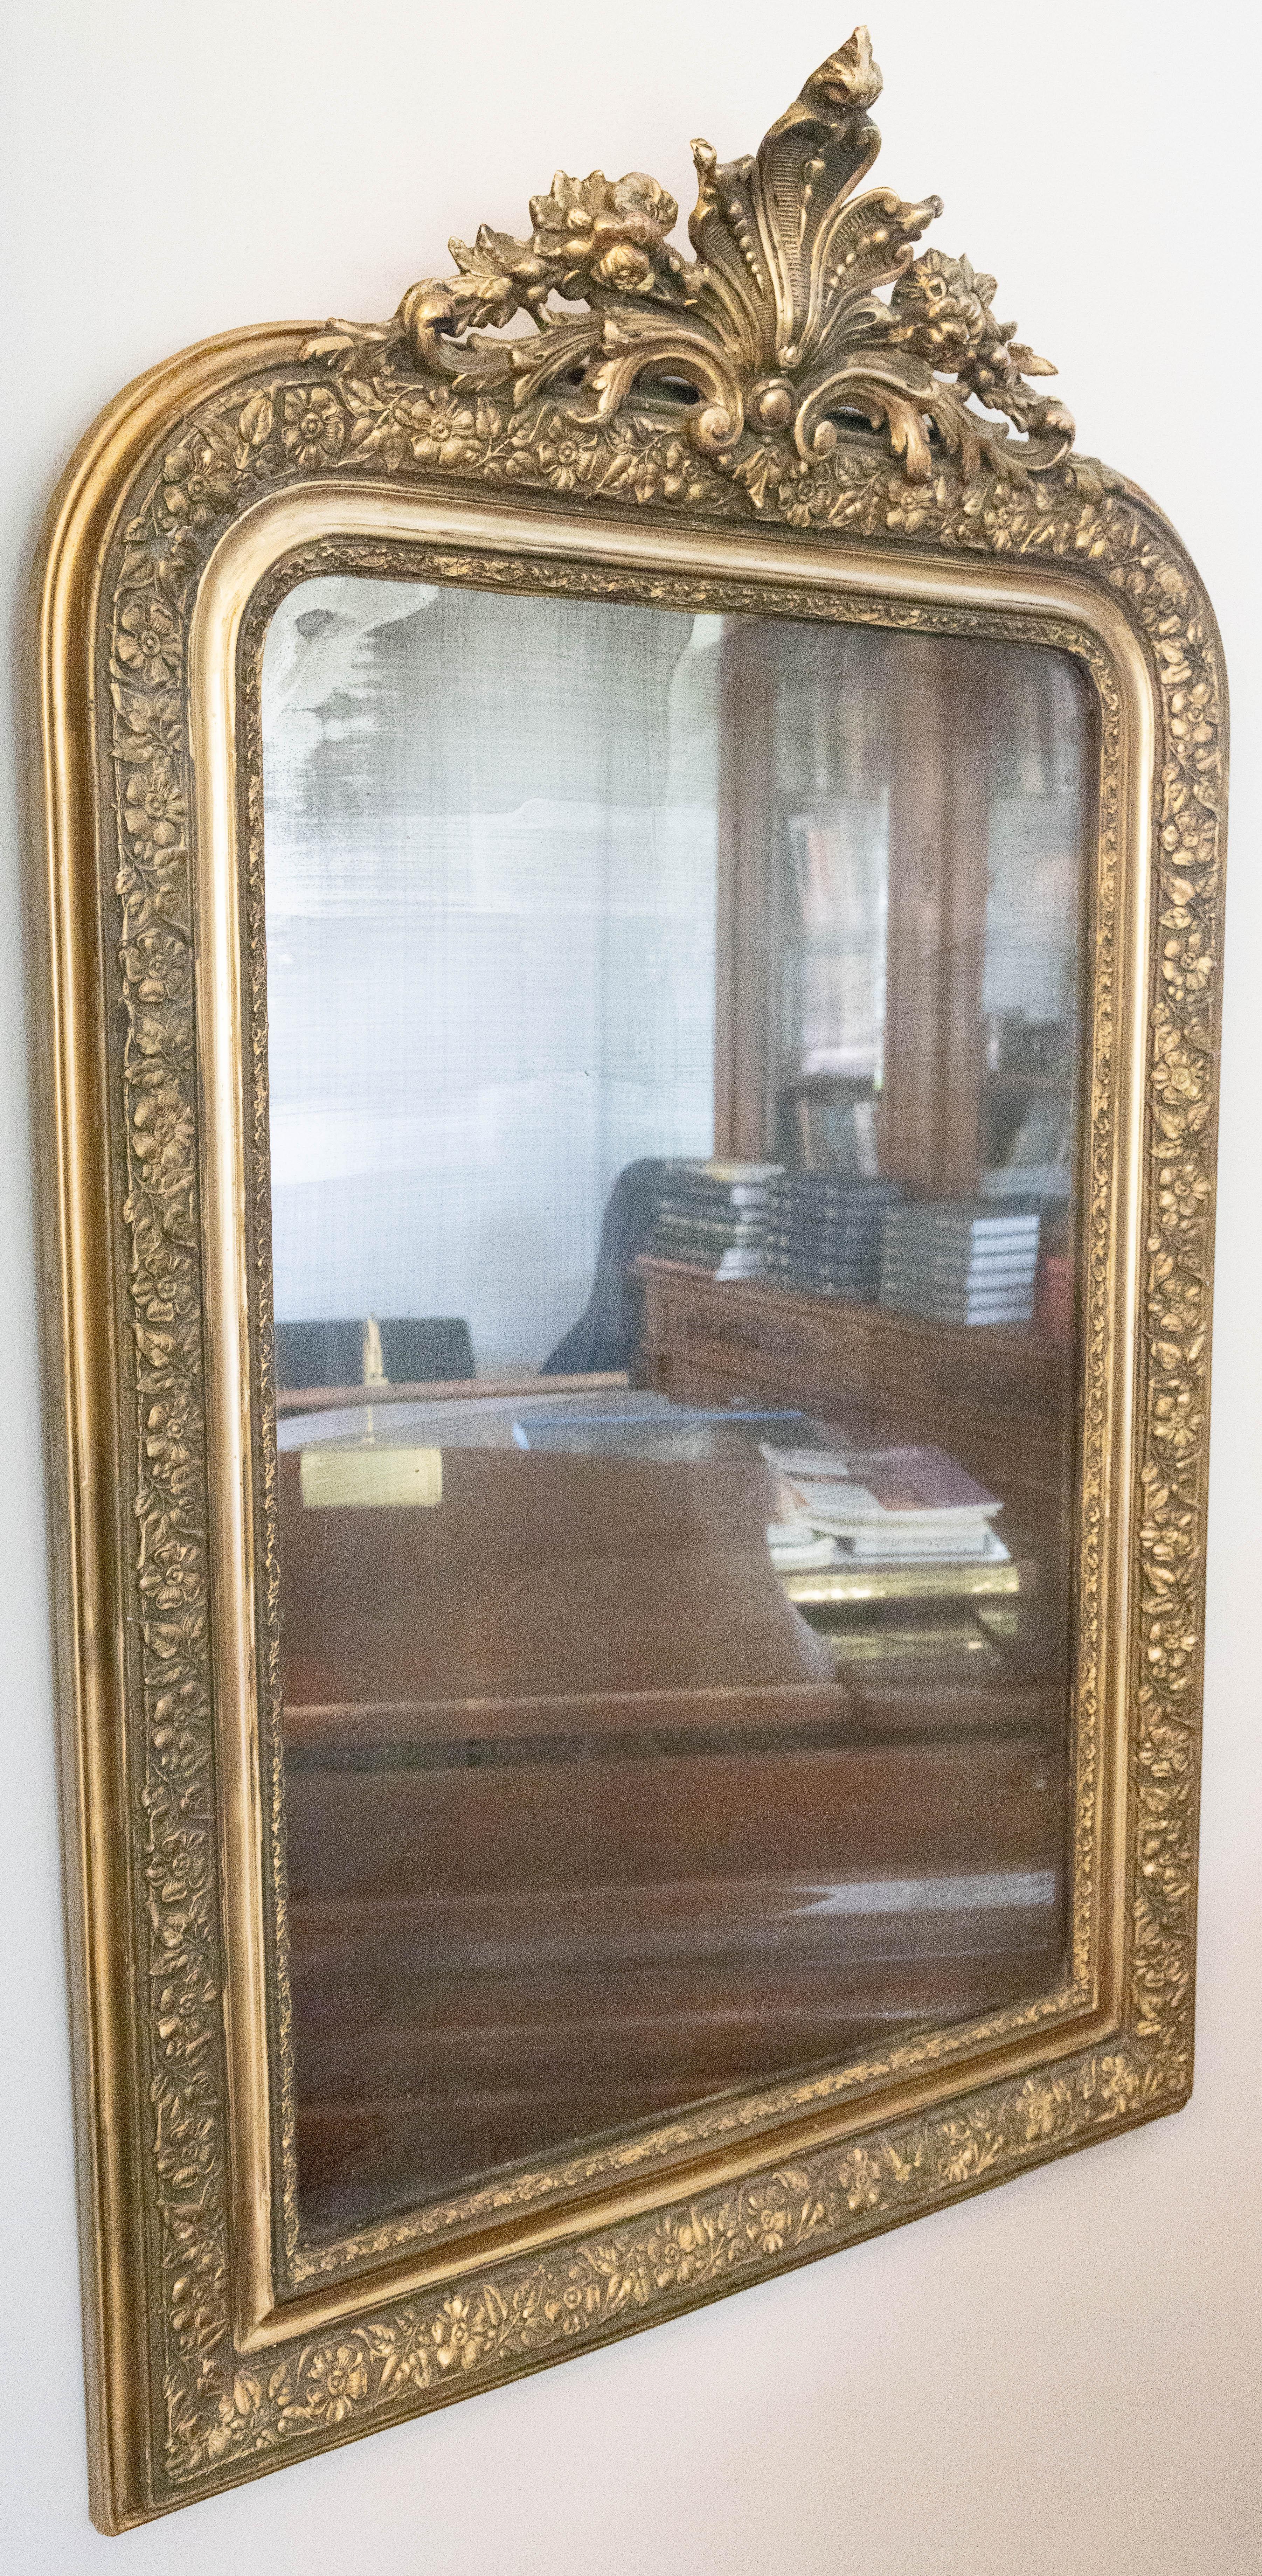 Un magnifique miroir Louis Philippe français ancien en bois doré et gesso avec une crête étonnante et le vieux miroir original en verre et le support en bois. Ce beau miroir a de beaux accents floraux, des feuilles d'acanthe et des motifs de